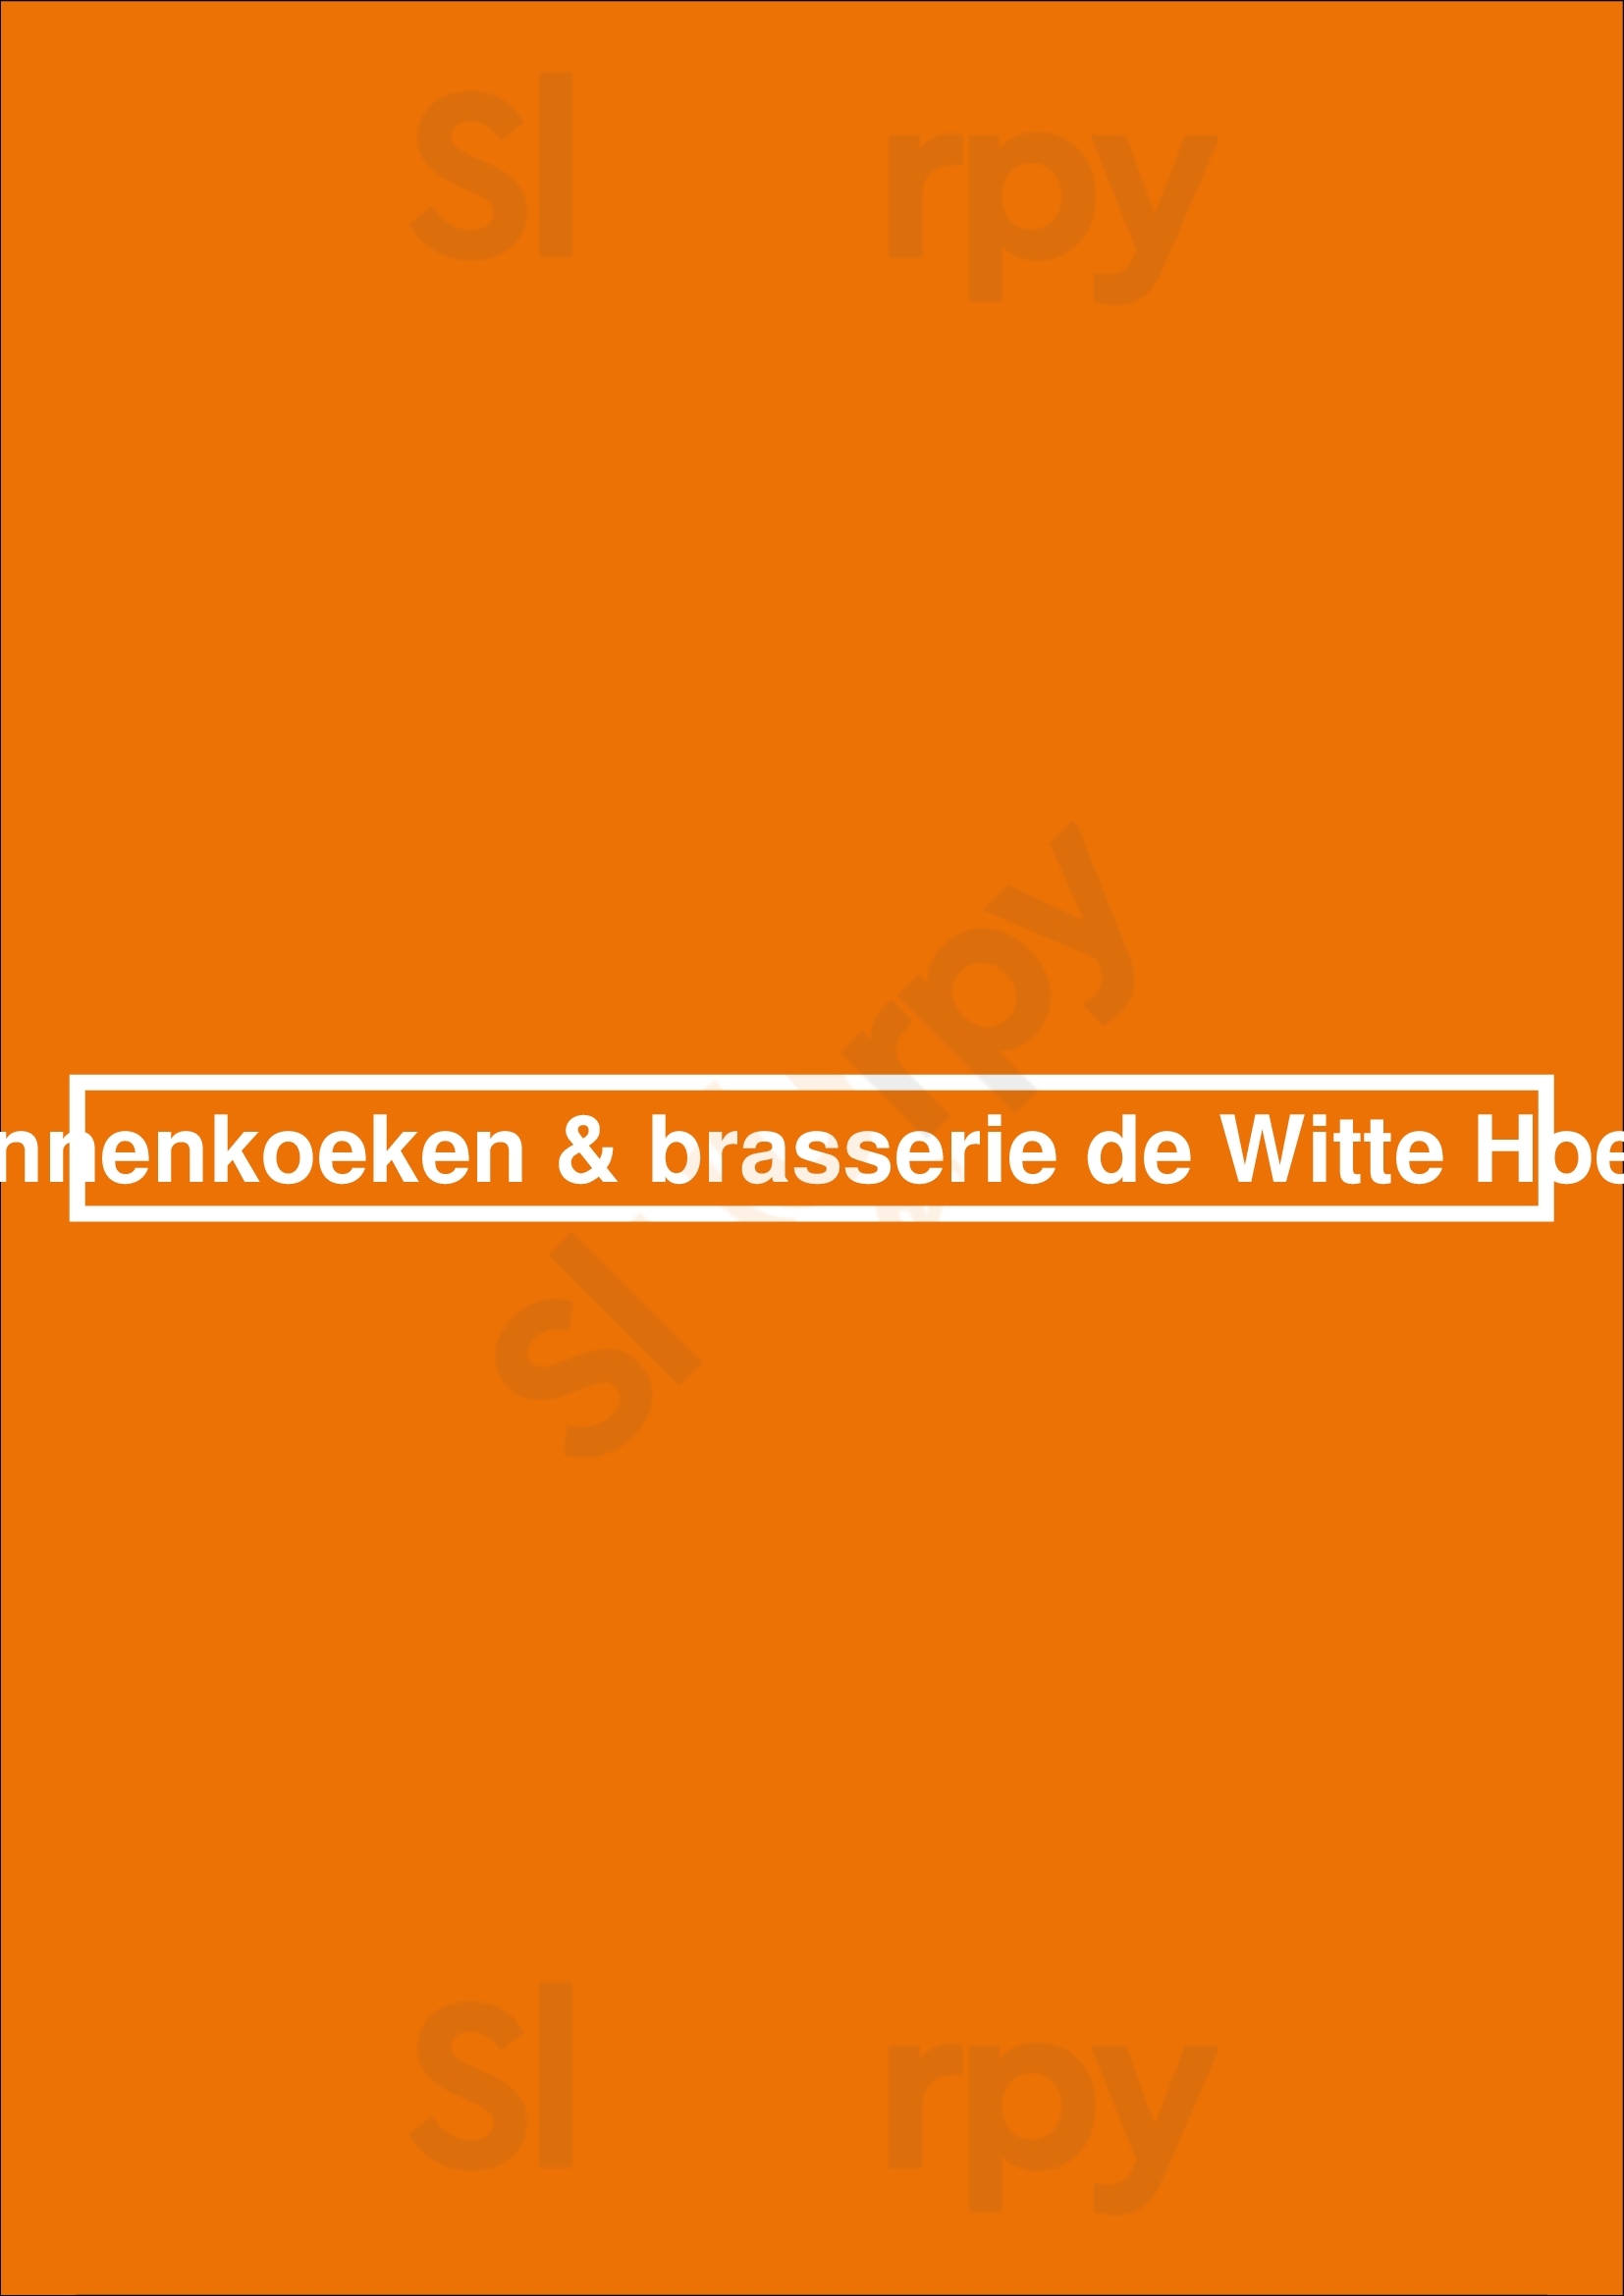 Pannenkoeken & Brasserie De Witte Hoeve Giethoorn Menu - 1